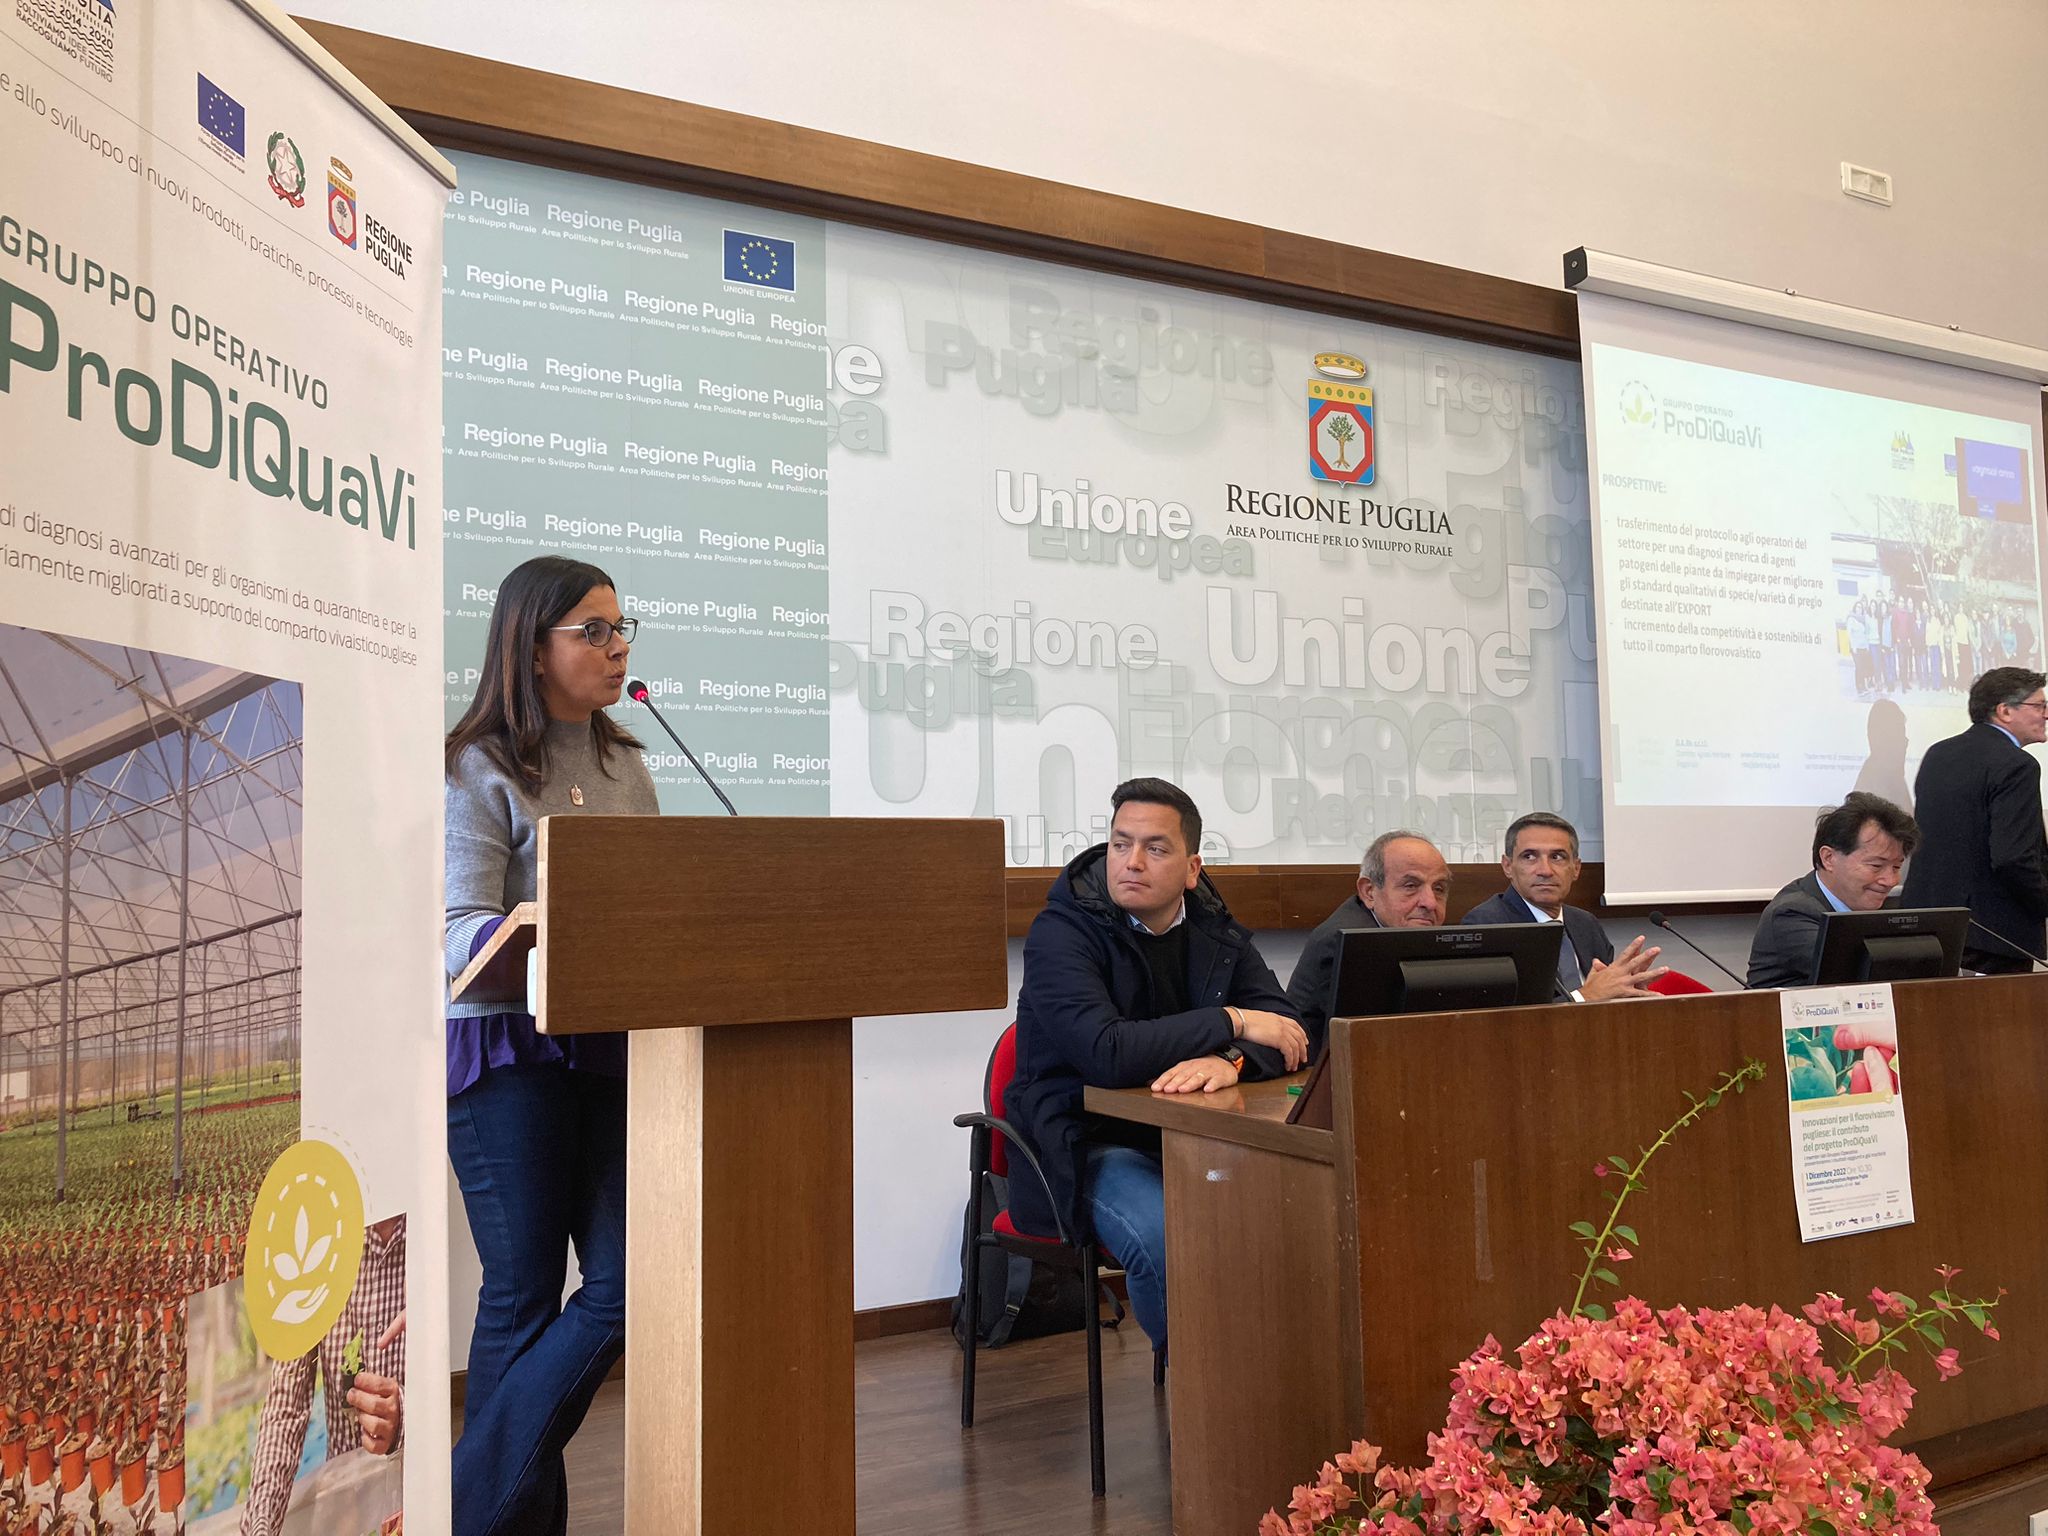 Galleria Innovazioni per il florovivaismo pugliese: il contributo del progetto 'ProDiQuaVi' sostenuto dal PSR Puglia  - Diapositiva 5 di 6